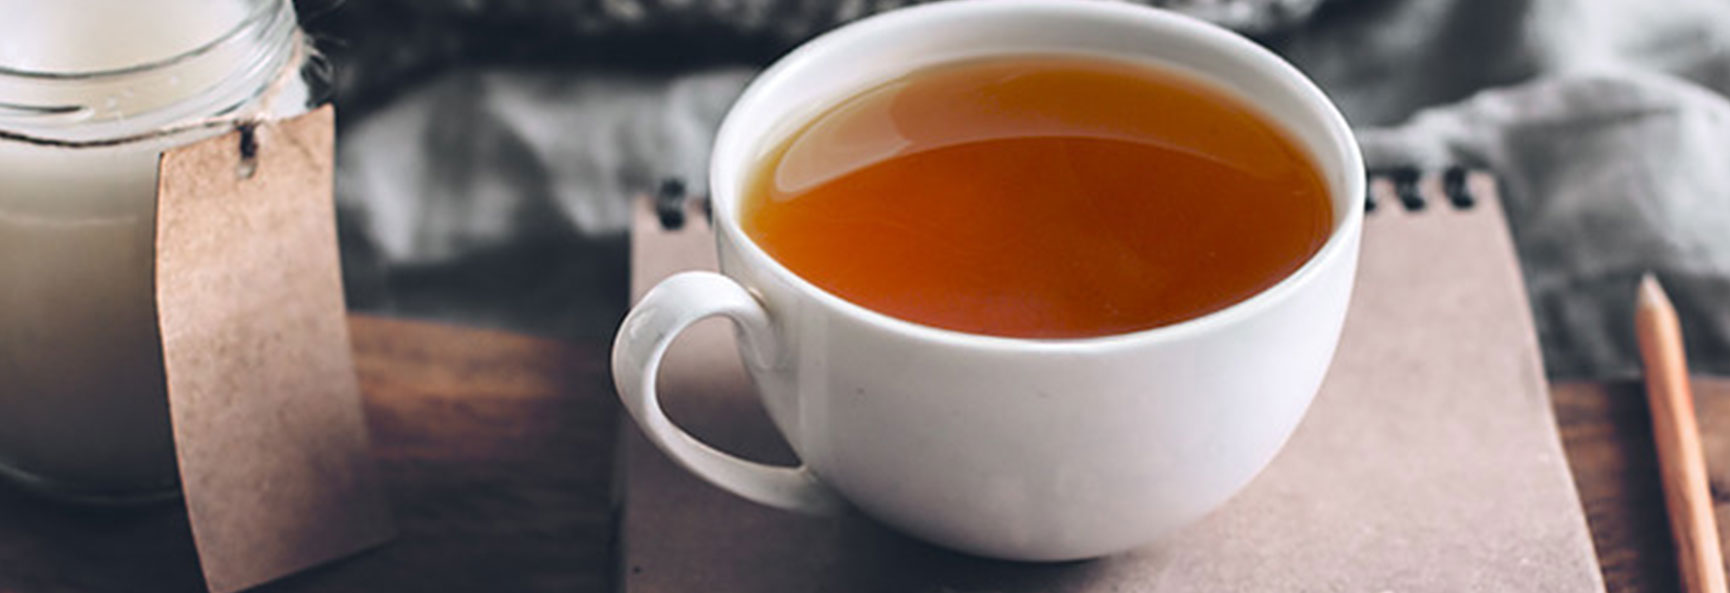 Tea and Cardiovascular Health